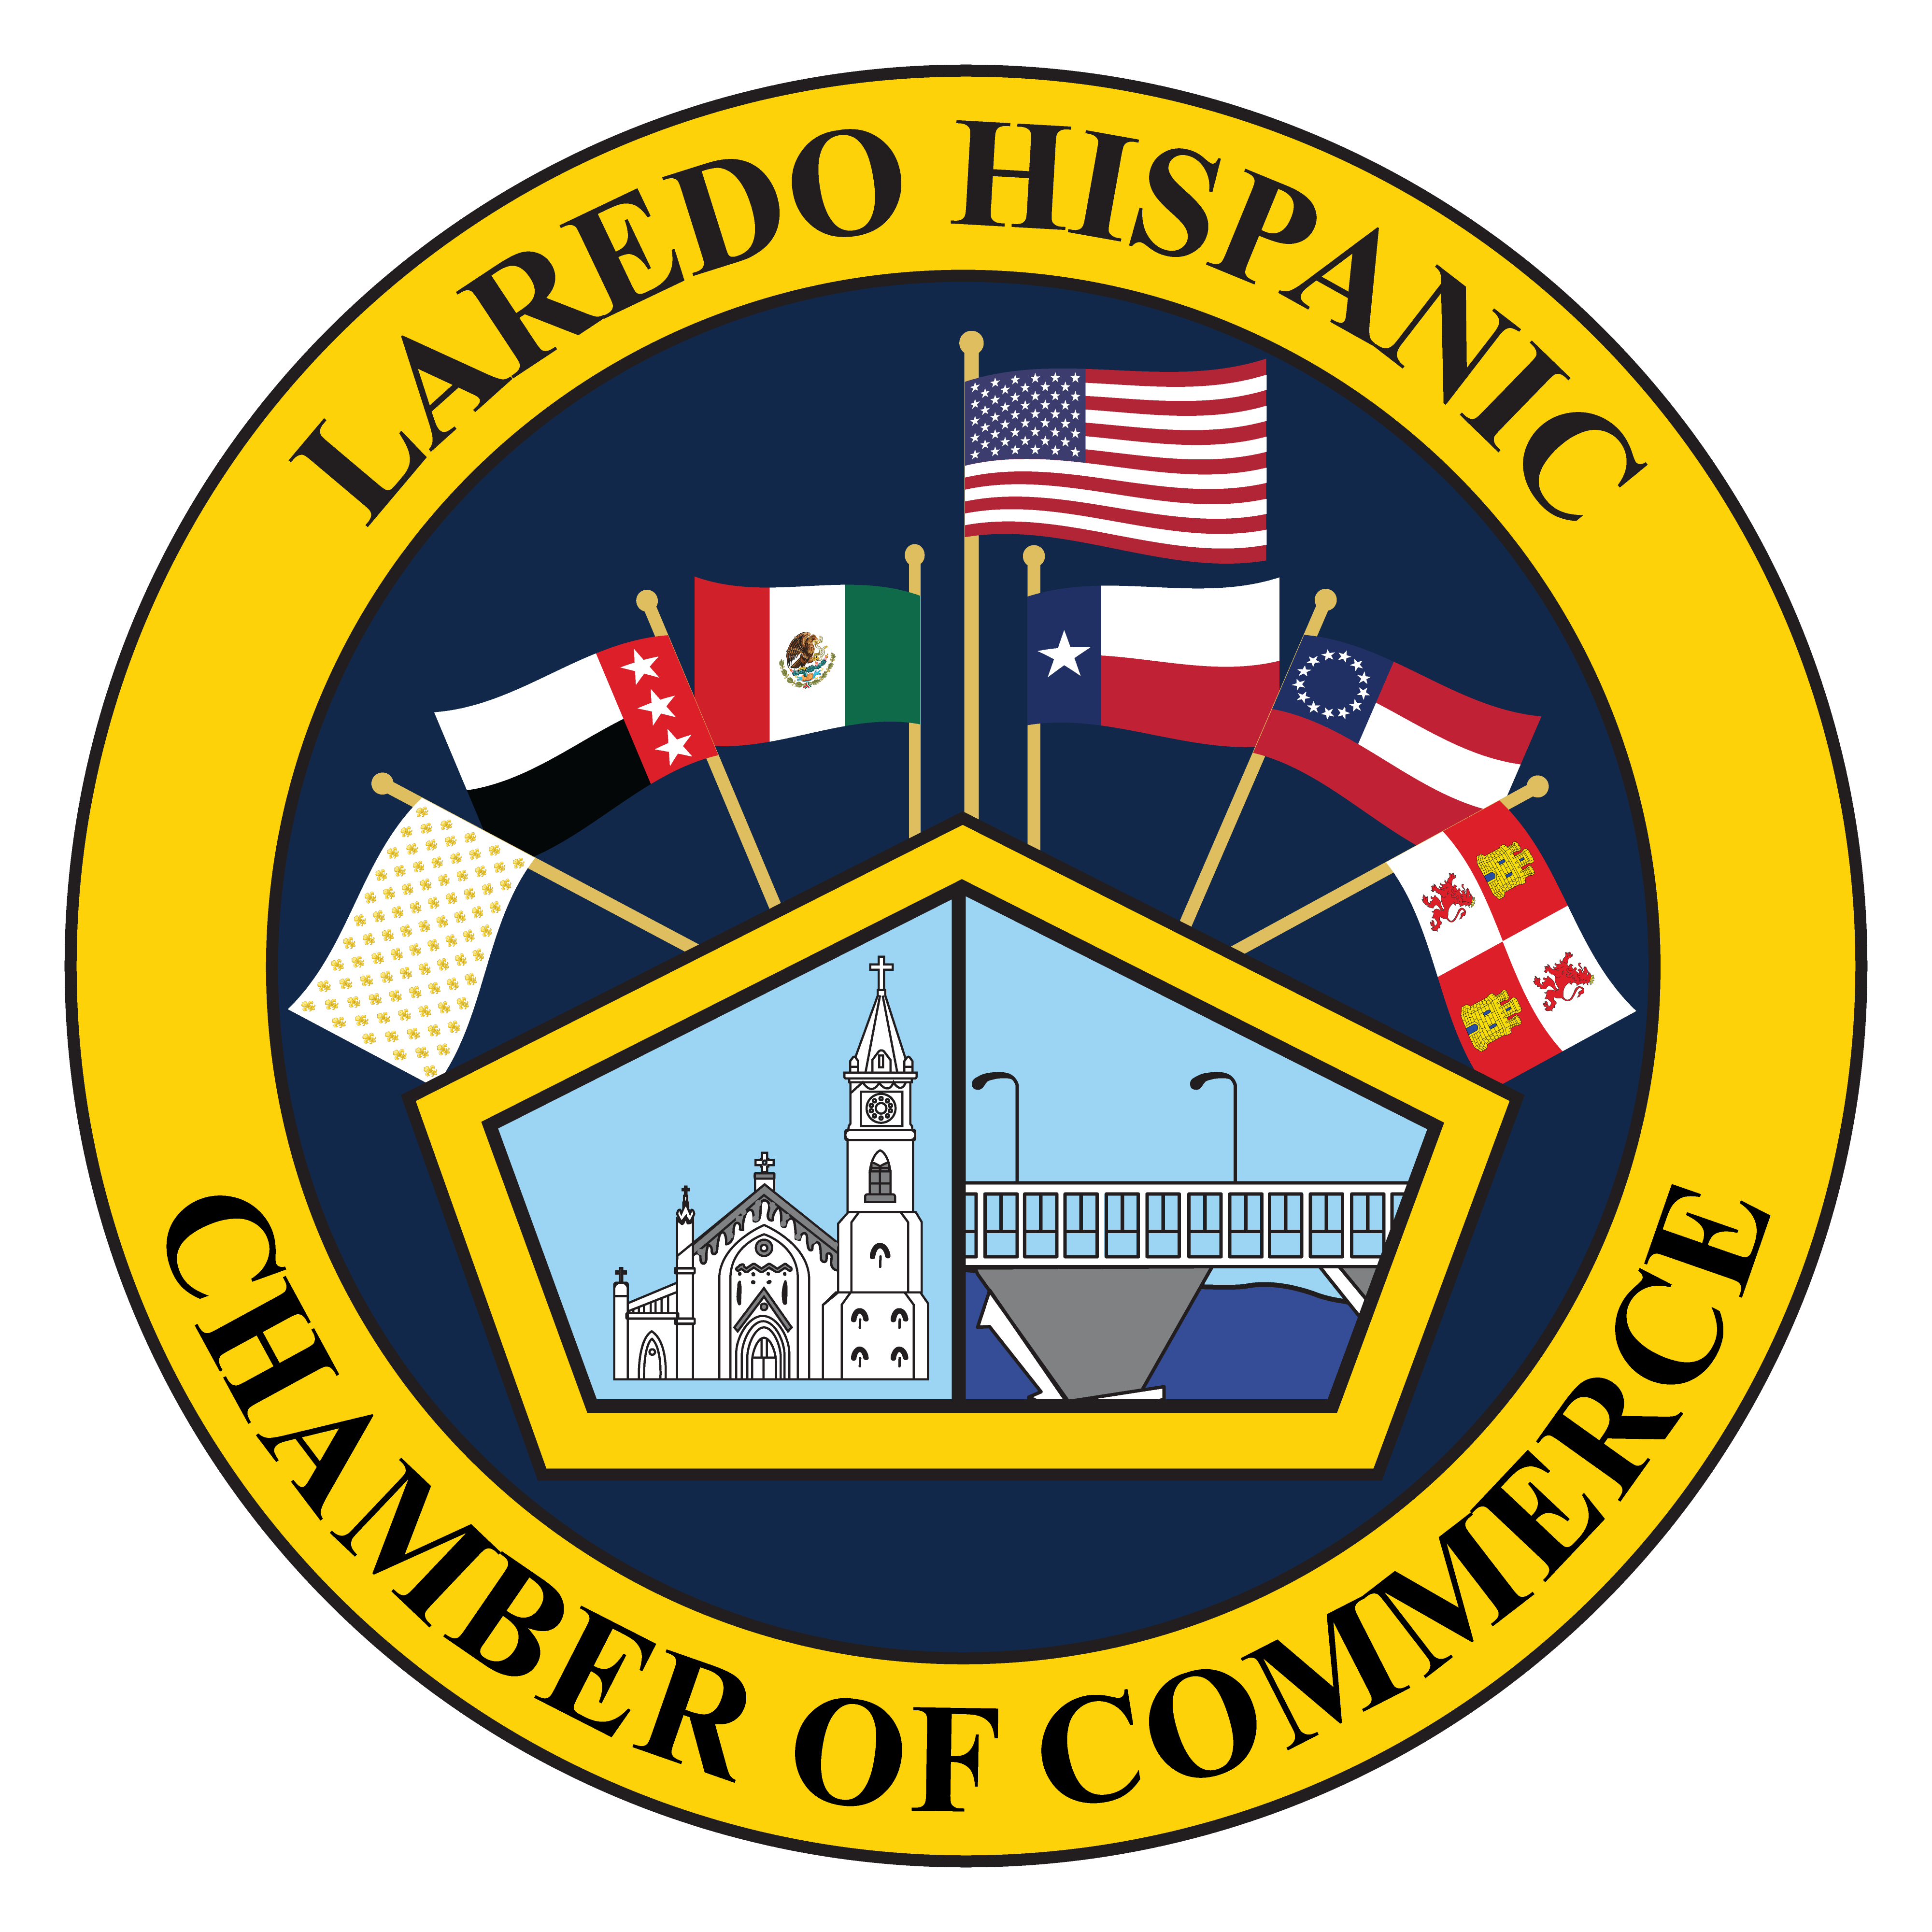 Laredo Hispanic Chamber of Commerce